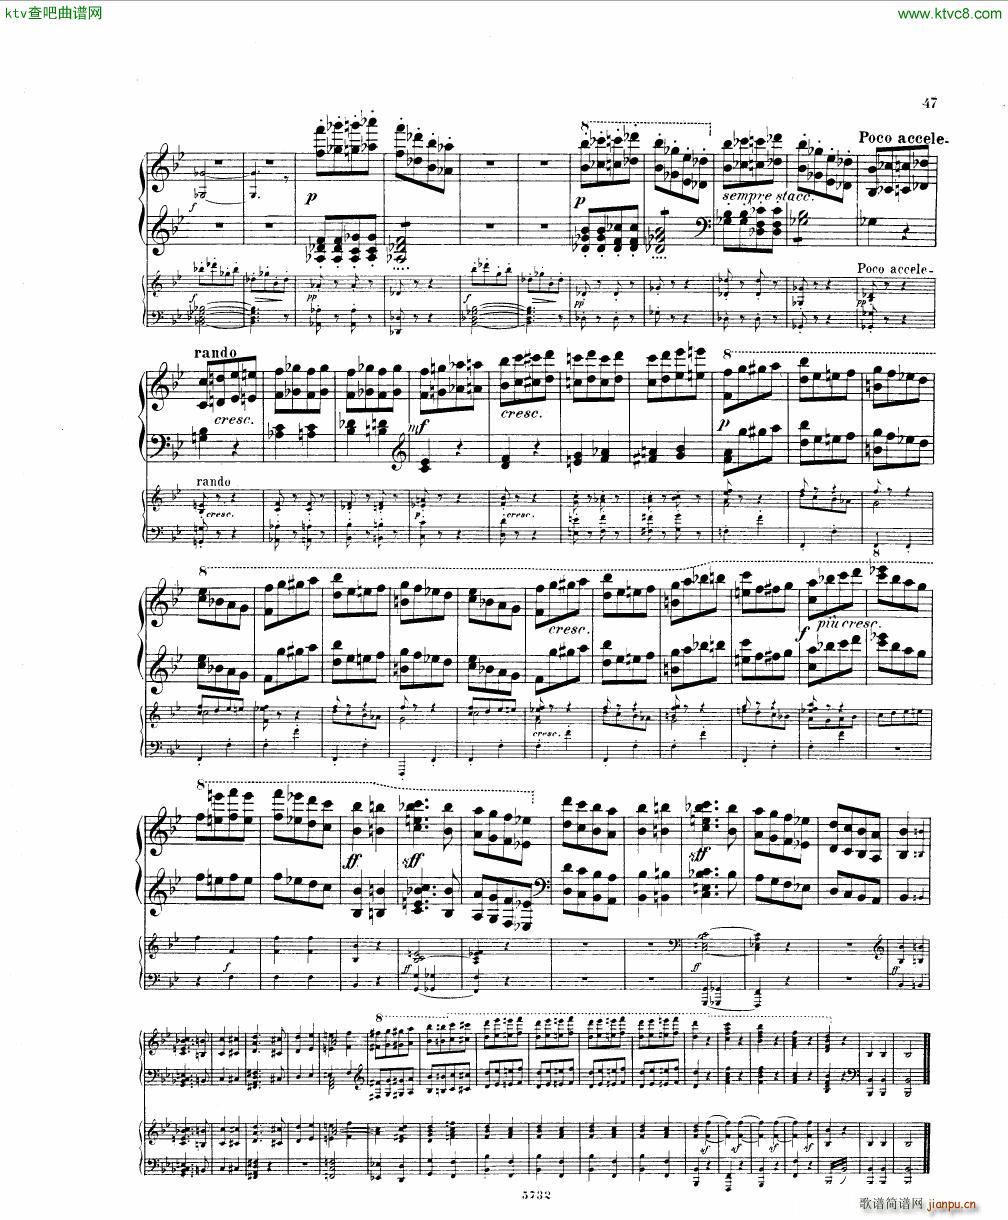 Fuchs Piano concerto Op 27 I()45